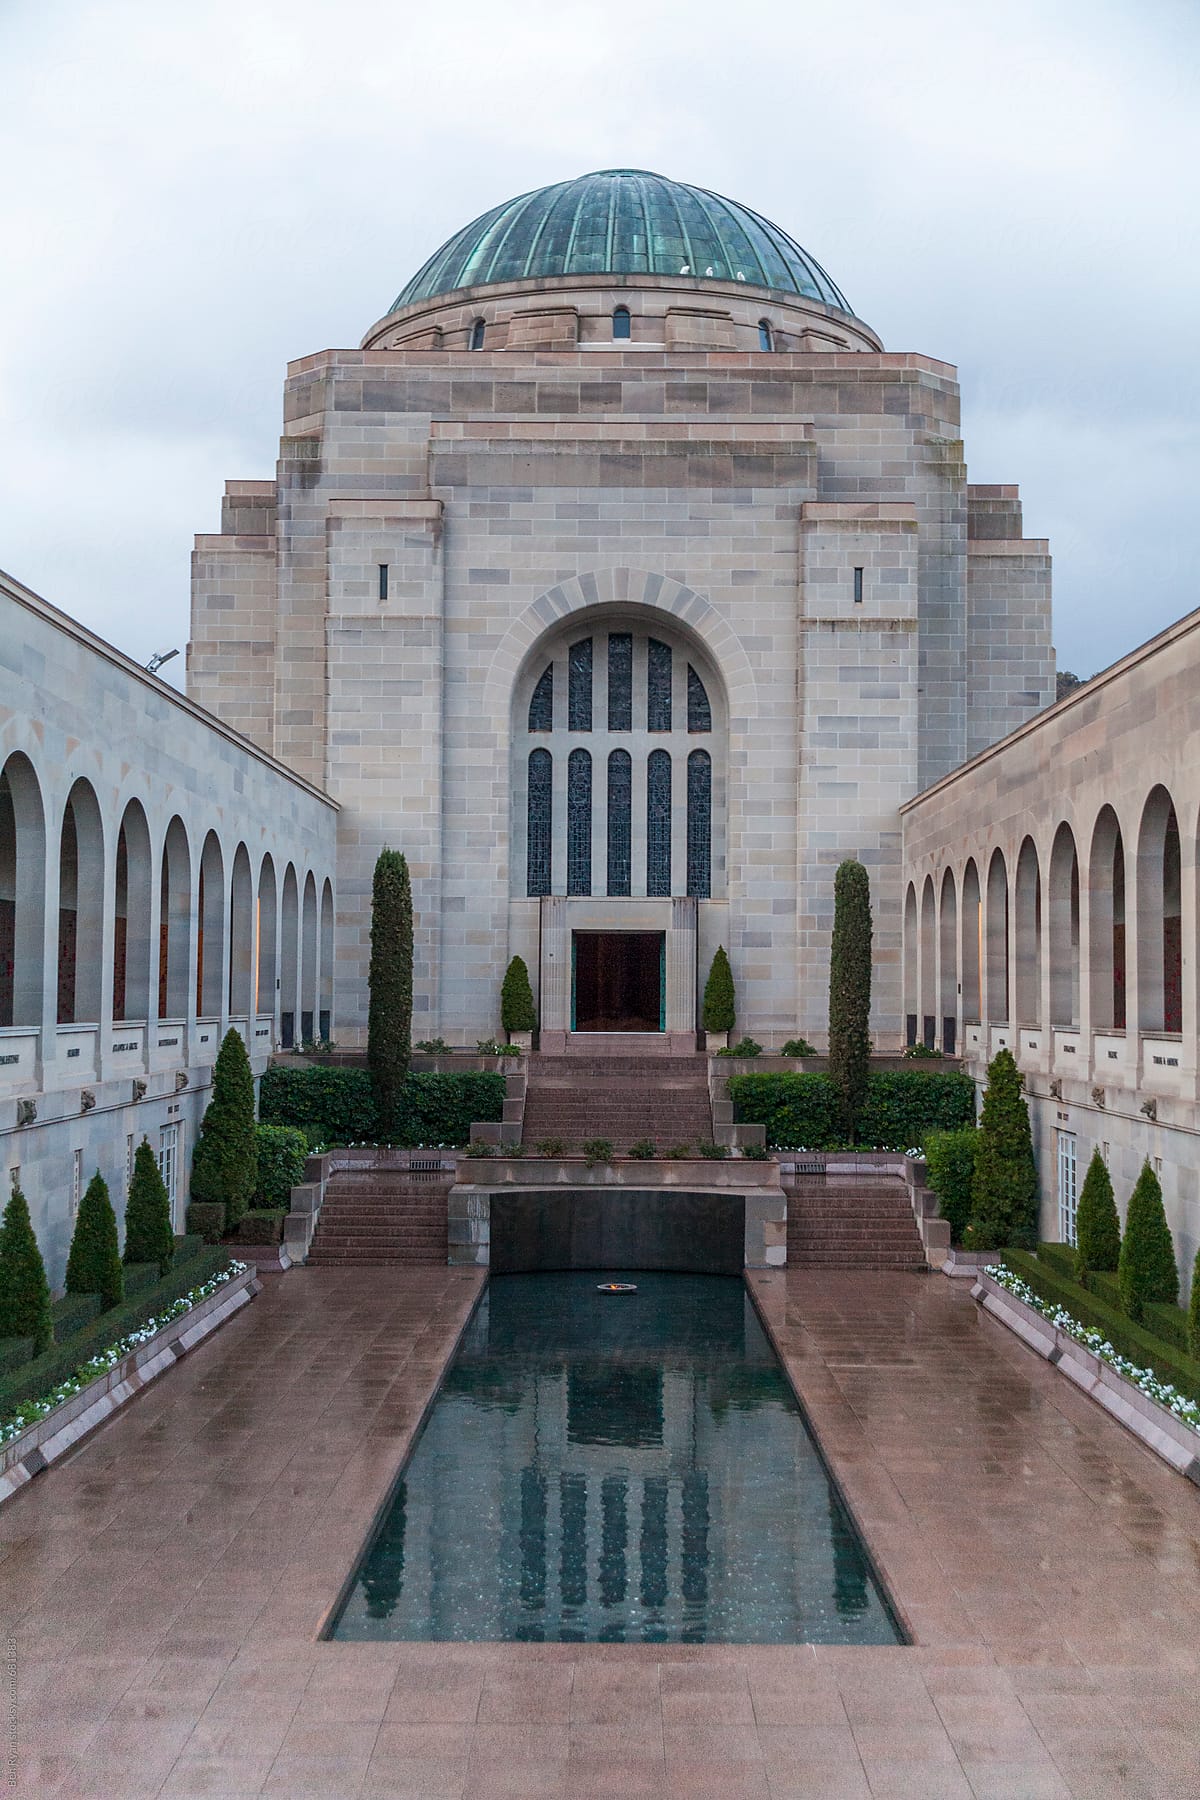 Forecourt of Australian war memorial, Canberra